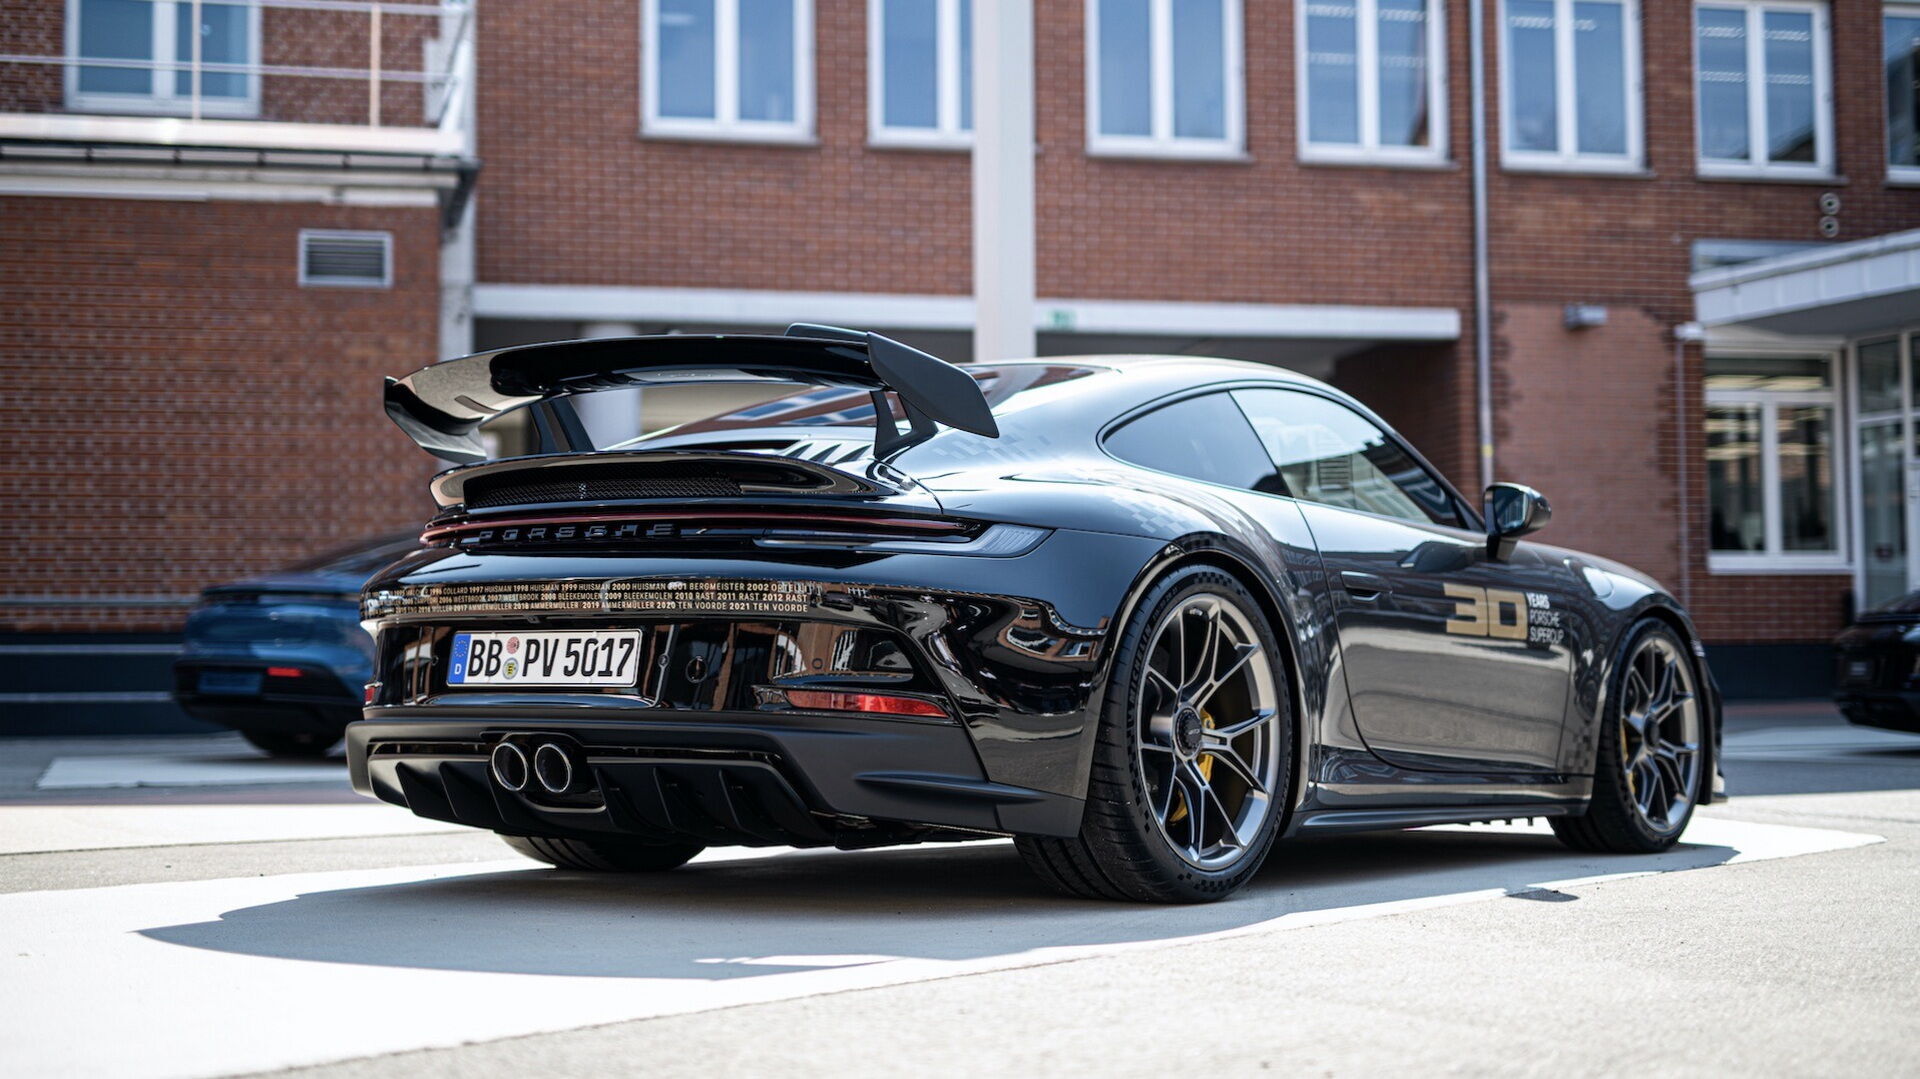 "Ювілейний" екземпляр збудований на базі дорожньої версії купе Porsche 911 GT3, які беруть участь у змаганнях Supercup.